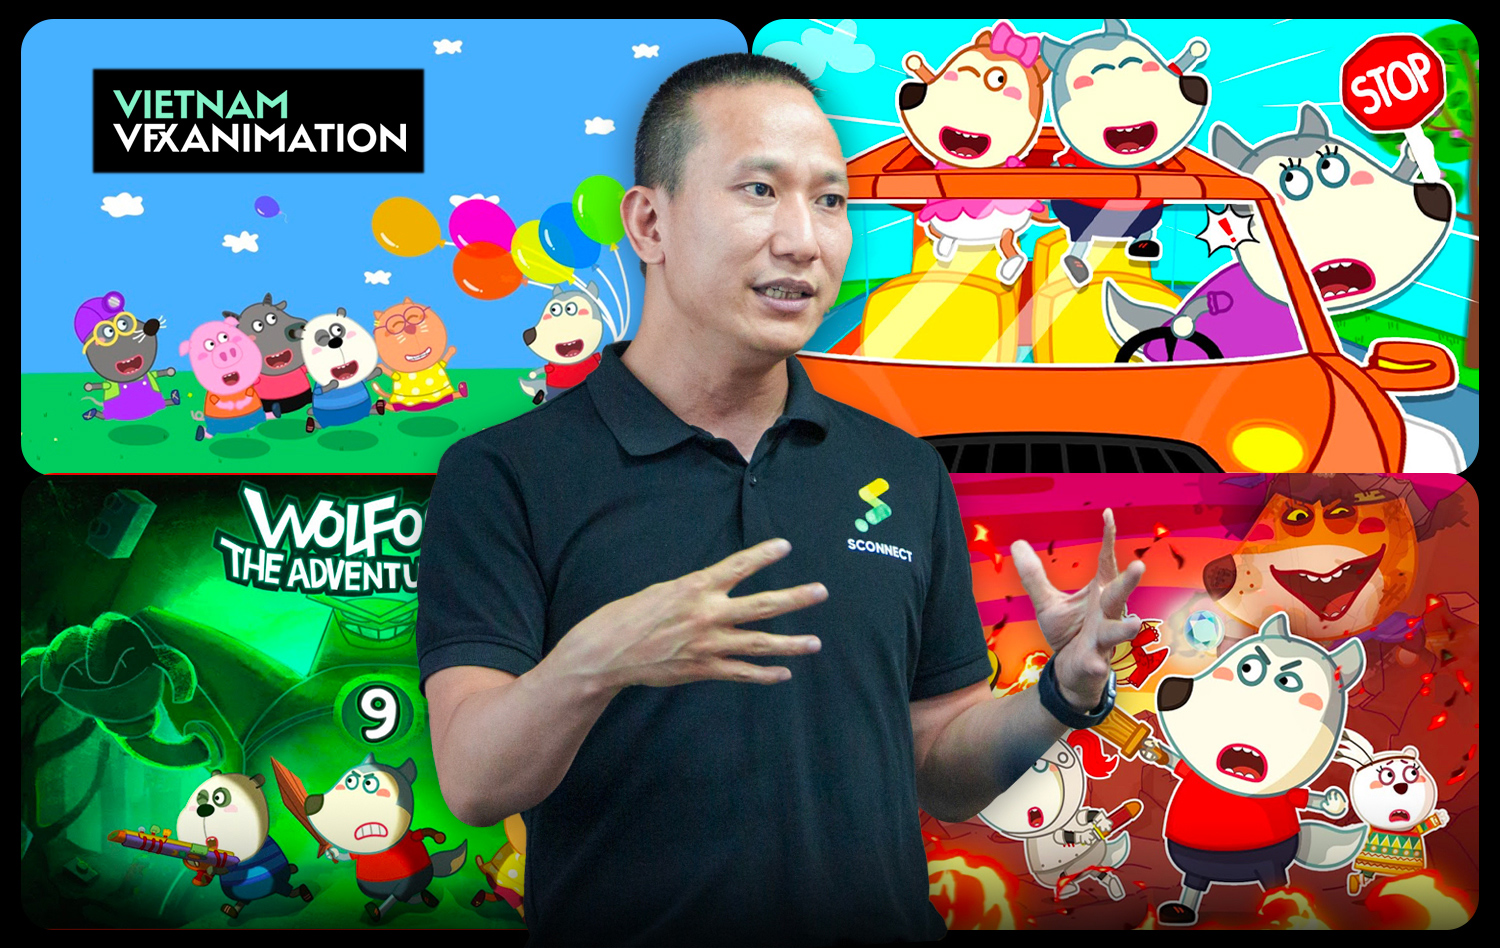 Hé mở chân dung Công ty Sconnect Việt Nam - DN sở hữu nhân vật hoạt hình Wolfoo nổi tiếng thế giới - Ảnh 1.